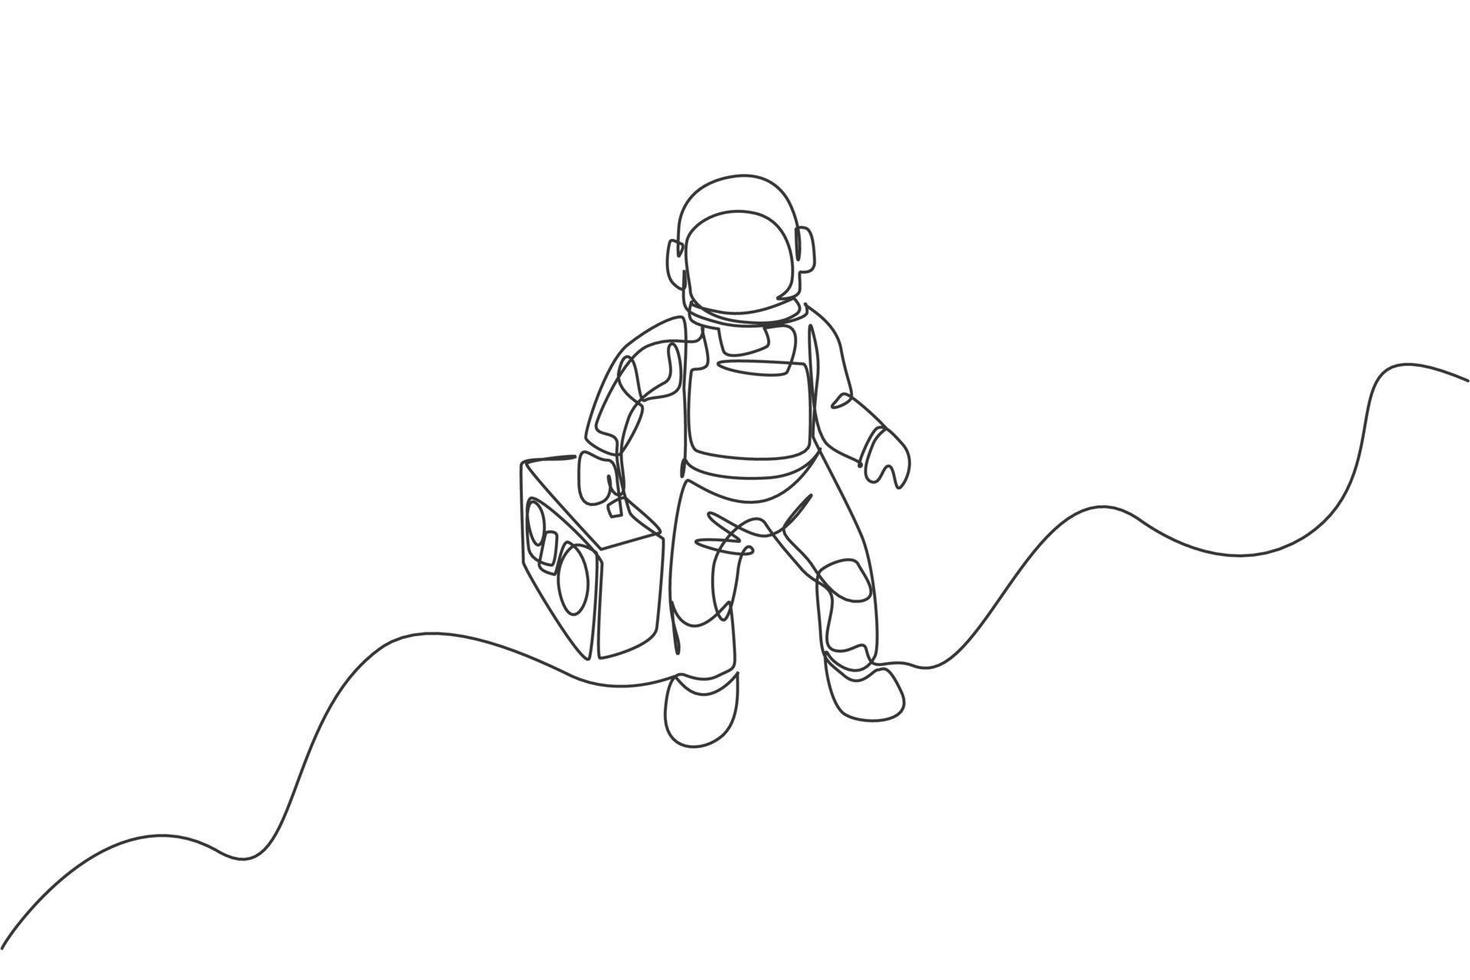 um desenho de linha única de astronauta voando e trazendo rádio retrô em ilustração gráfica do vetor do espaço profundo. cartaz de concerto de música com conceito de astronauta espacial. design moderno de desenho de linha contínua